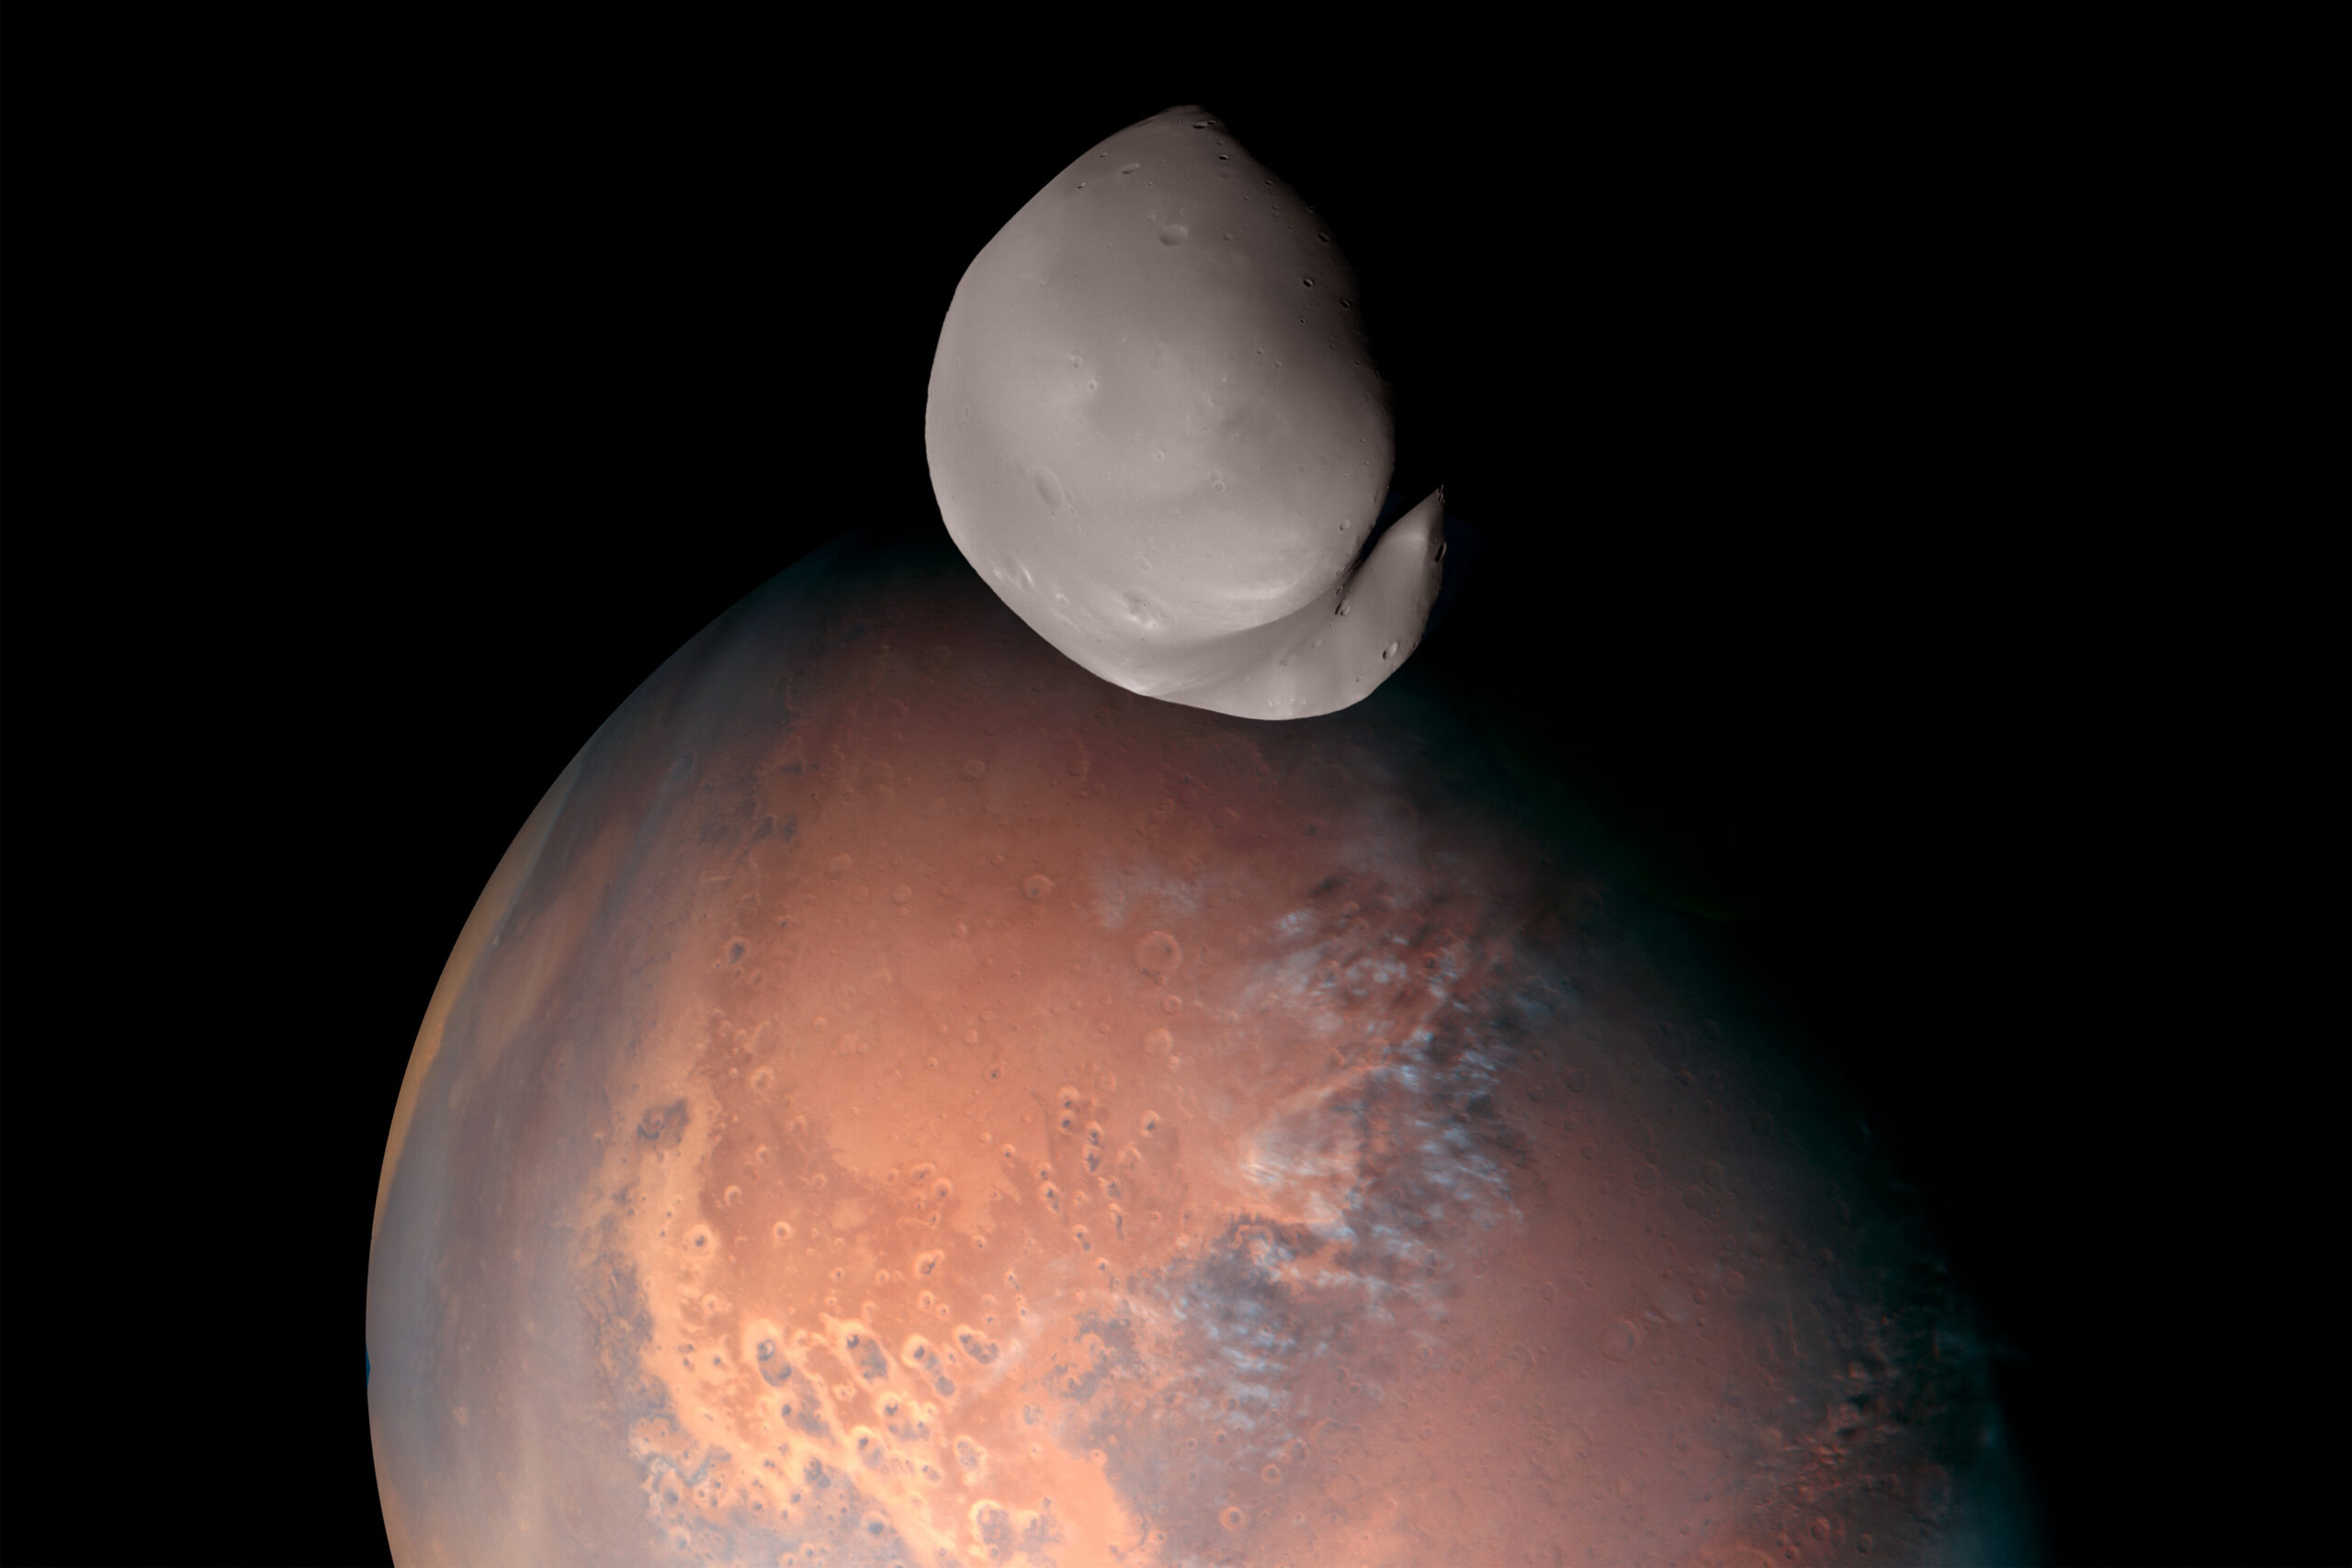 Δείμιος: Έτσι φαίνεται ο μικρότερος δορυφόρος του Άρη – Φωτογραφία που έστειλε στη Γη το διαστημικό σκάφος Hope